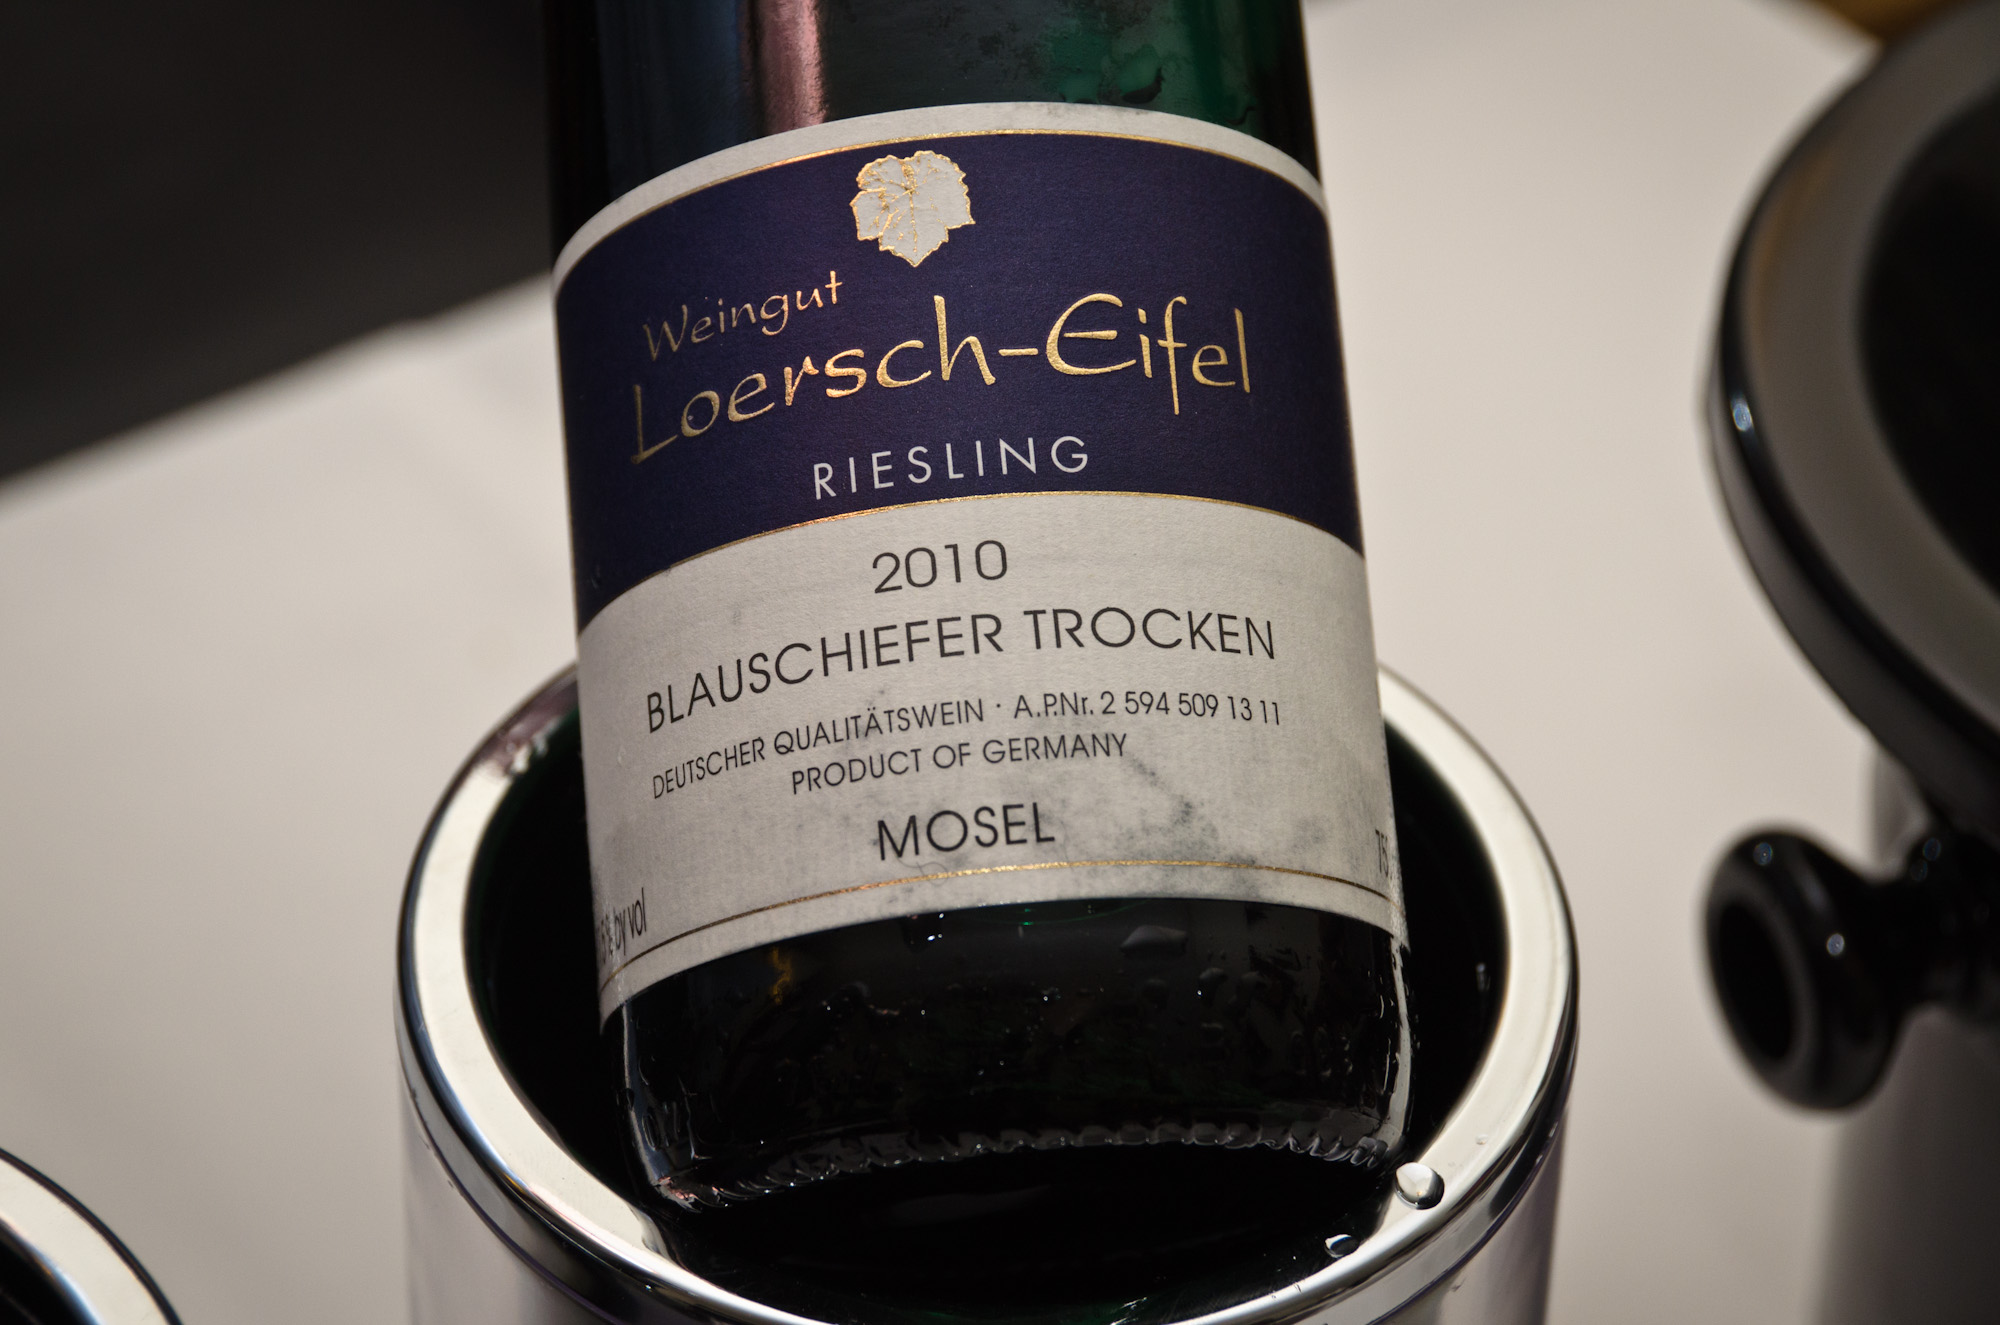 Loersch-Eifel Riesling label